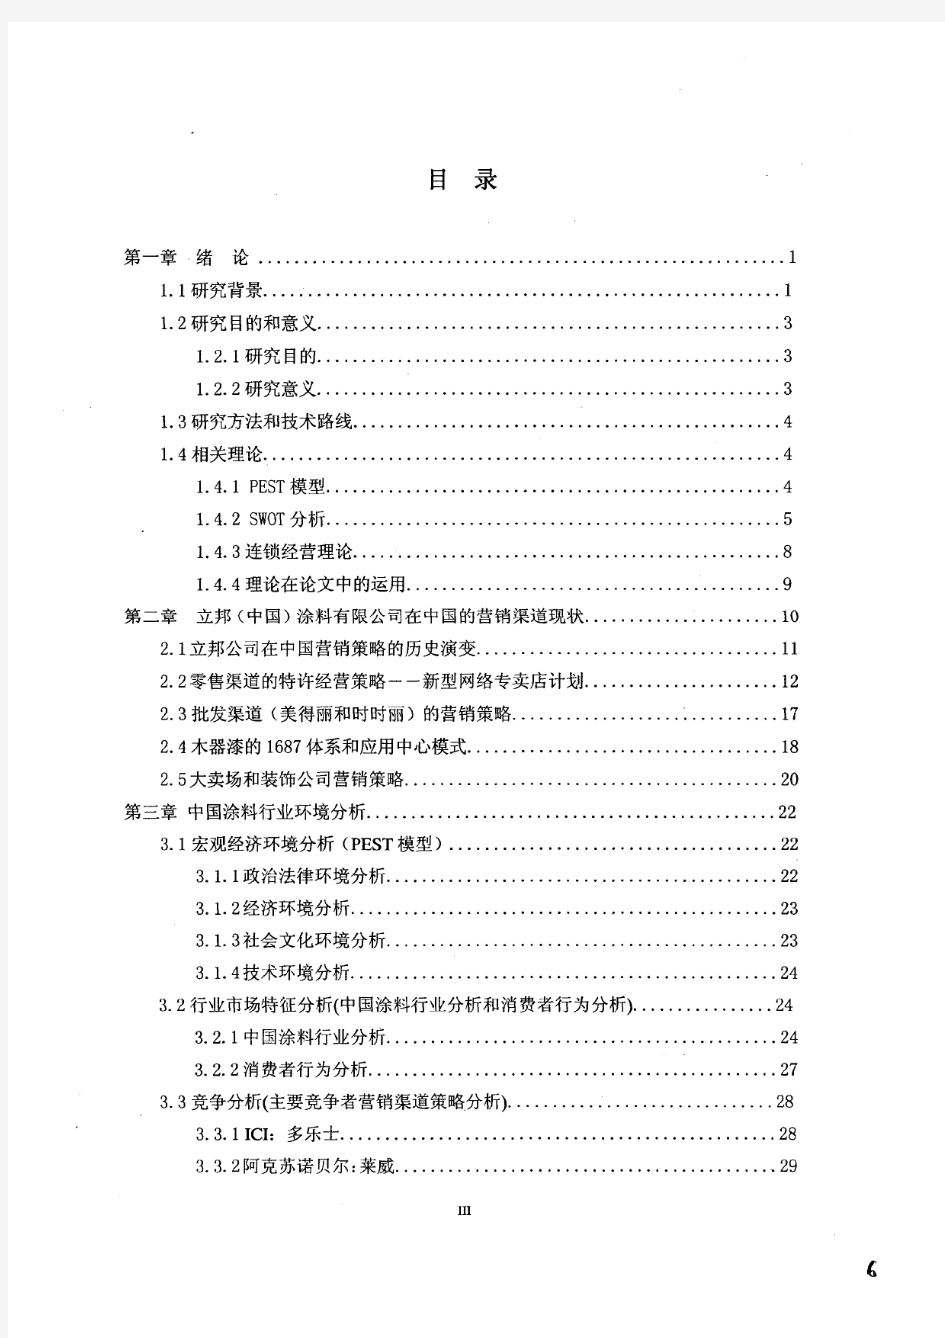 立邦涂料(中国)有限公司在中国市场营销渠道策略分析